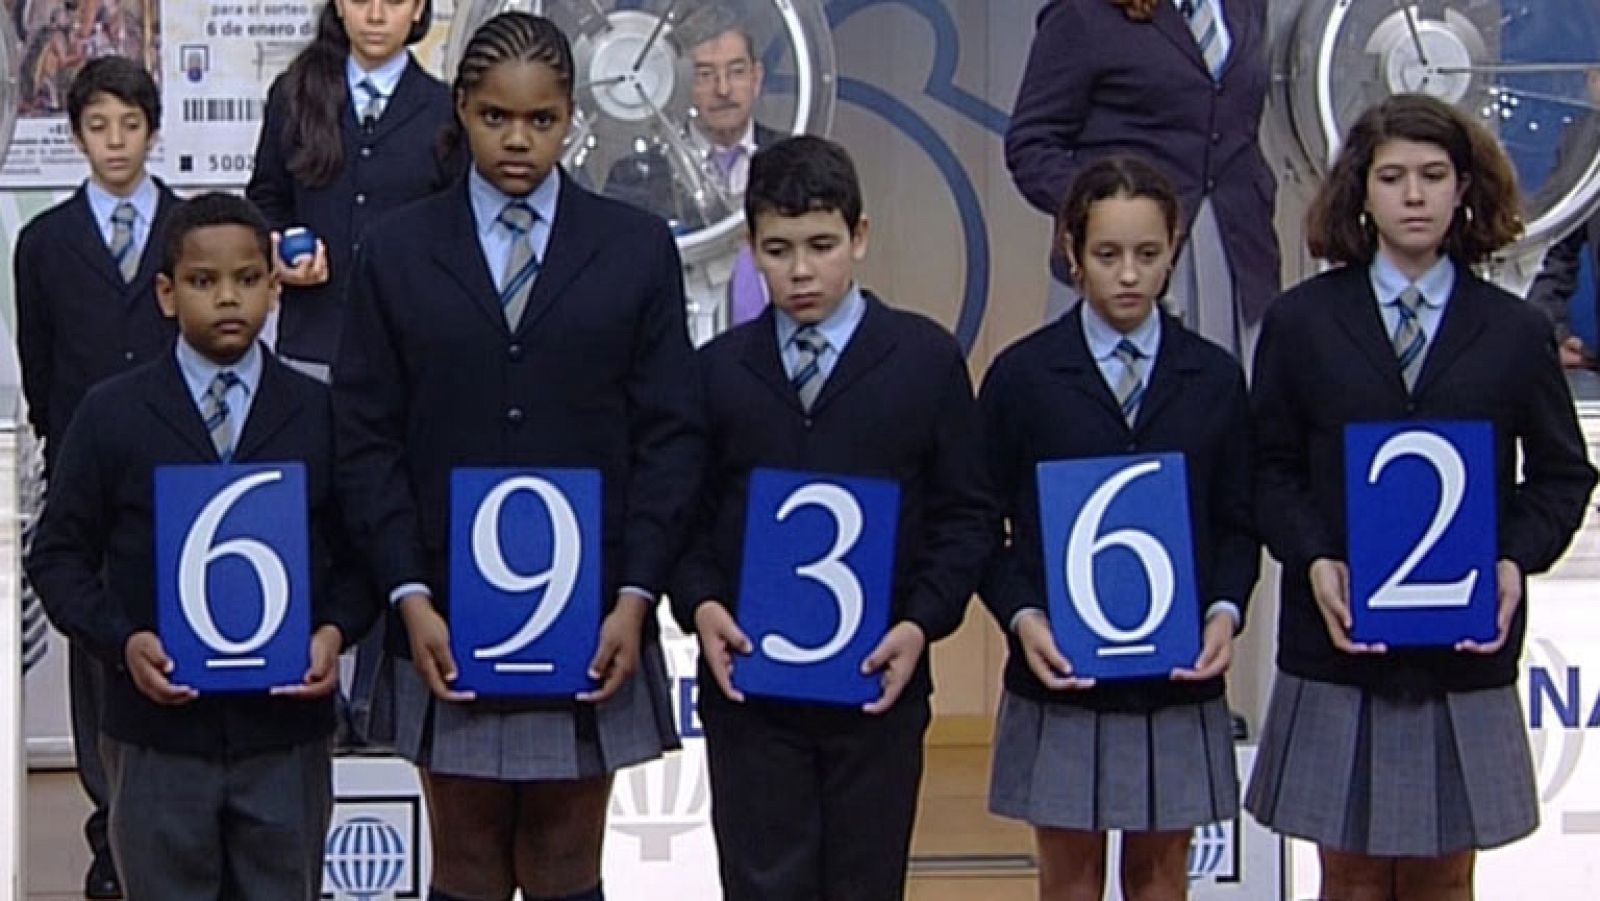 69.362, segundo premio del Sorteo del Niño 2014 | RTVE.es